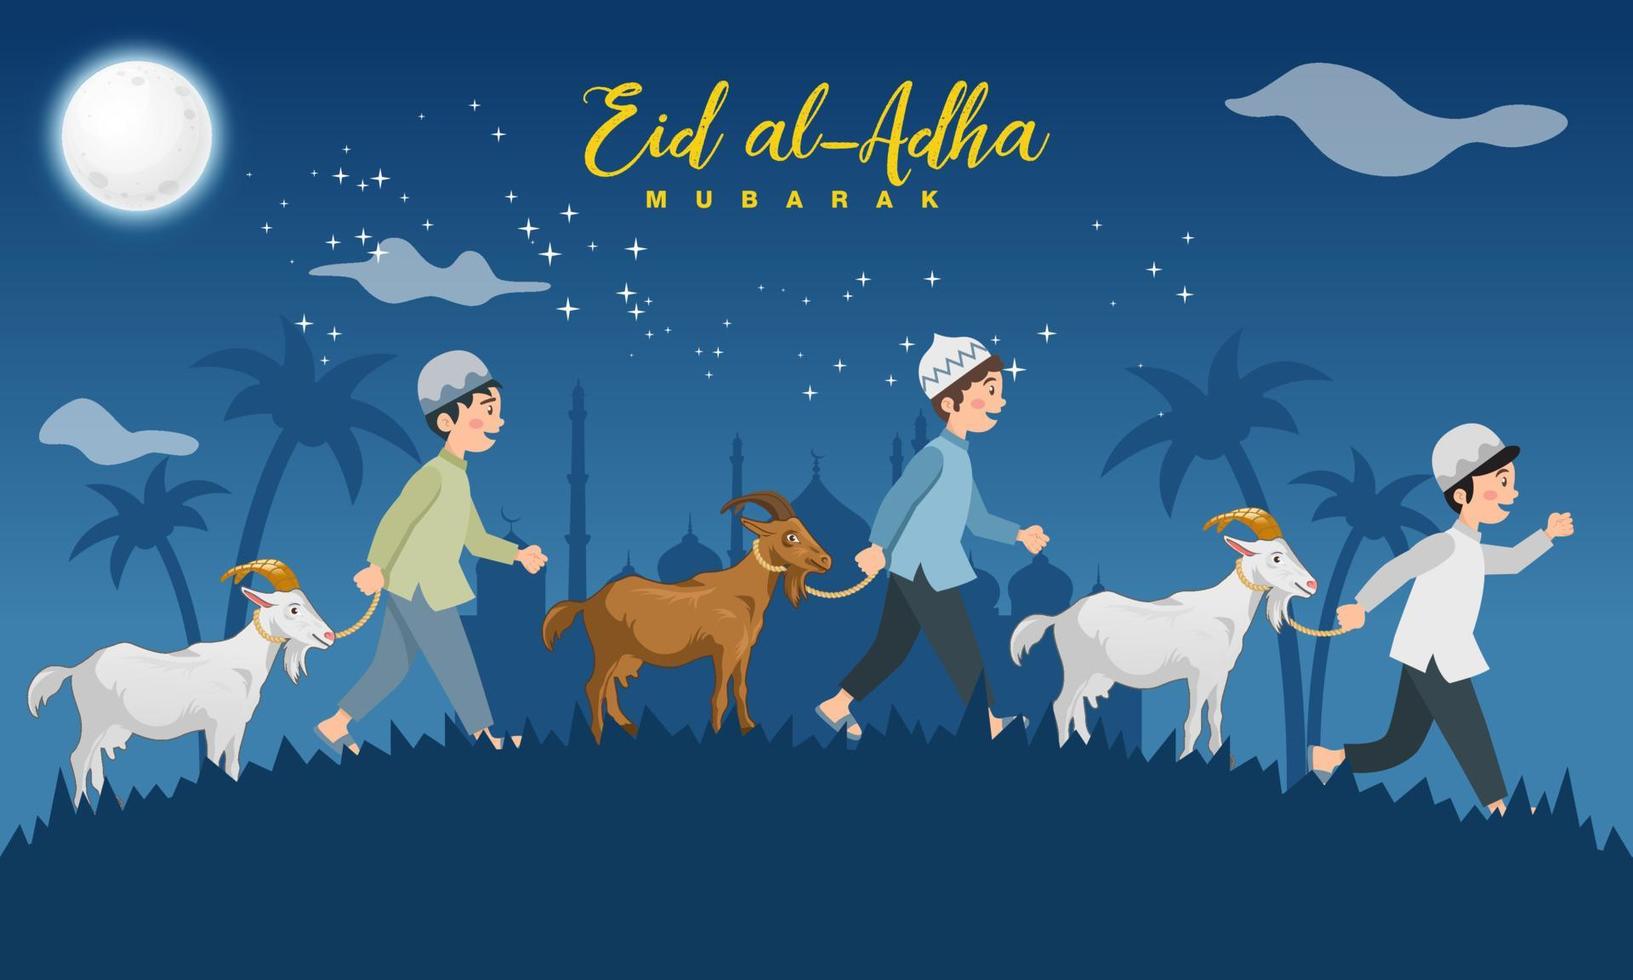 tarjeta de felicitación eid al adha. los niños musulmanes de dibujos animados toman una cabra para el sacrificio con luna llena, estrellas y mezquita como fondo. vector